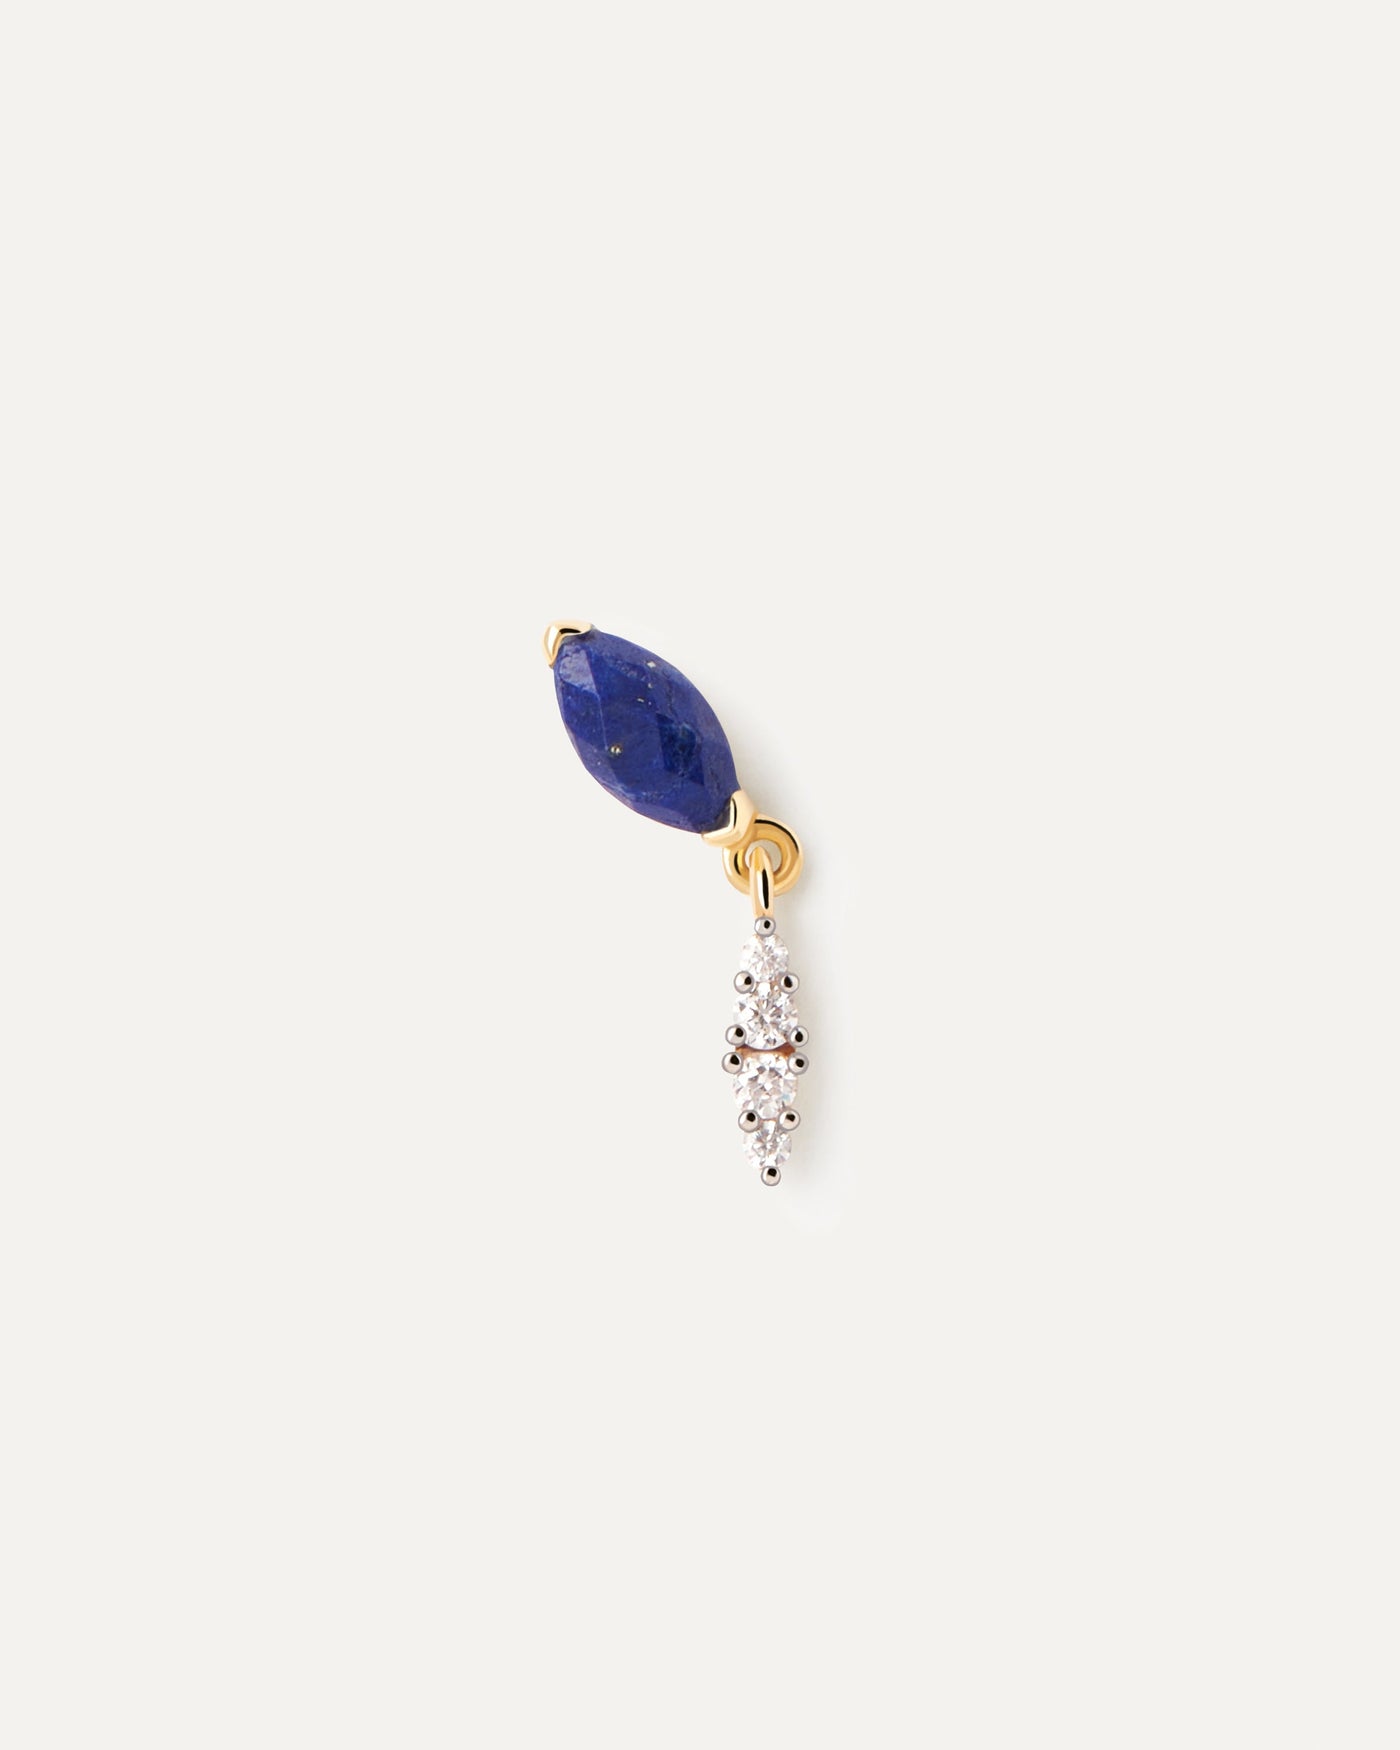 Sélection 2023 | Boucle D'Oreille Individuelle Lapis-Lazuli Ginger. Boucle d'oreille clou avec une pierre fine bleue et un pendentif en zircon blanc en forme d'œil. Découvrez les dernières nouveautés de chez PDPAOLA. Commandez et recevez votre bijou en toute sérénité. Livraison gratuite.